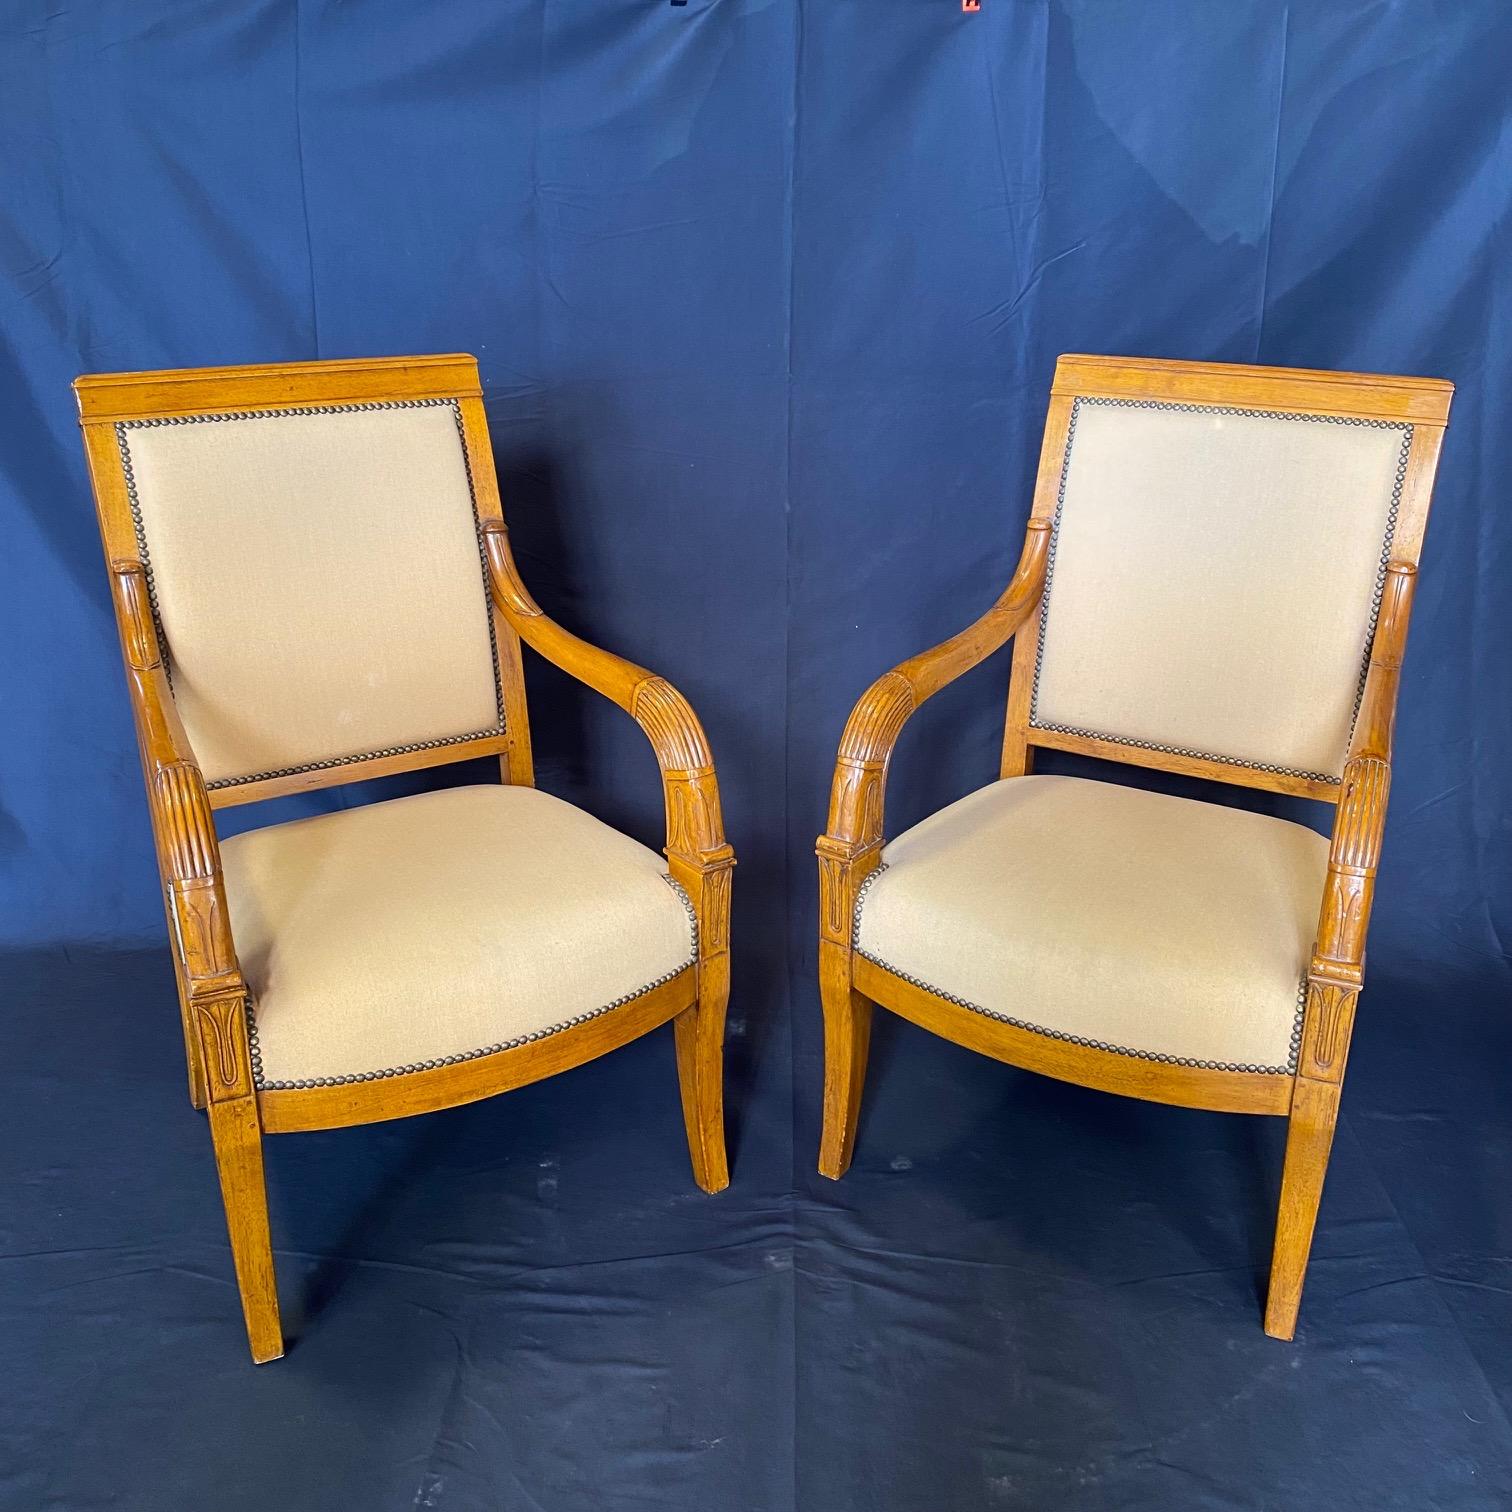 Dieses Set aus zwei eleganten Empire-Sesseln zeichnet sich durch sein klassisch schlichtes Design und die schön geformten Vorderbeine aus. Diese bequemen und stilvollen Stühle zeichnen sich durch eine Fülle von handwerklichen Details aus, darunter